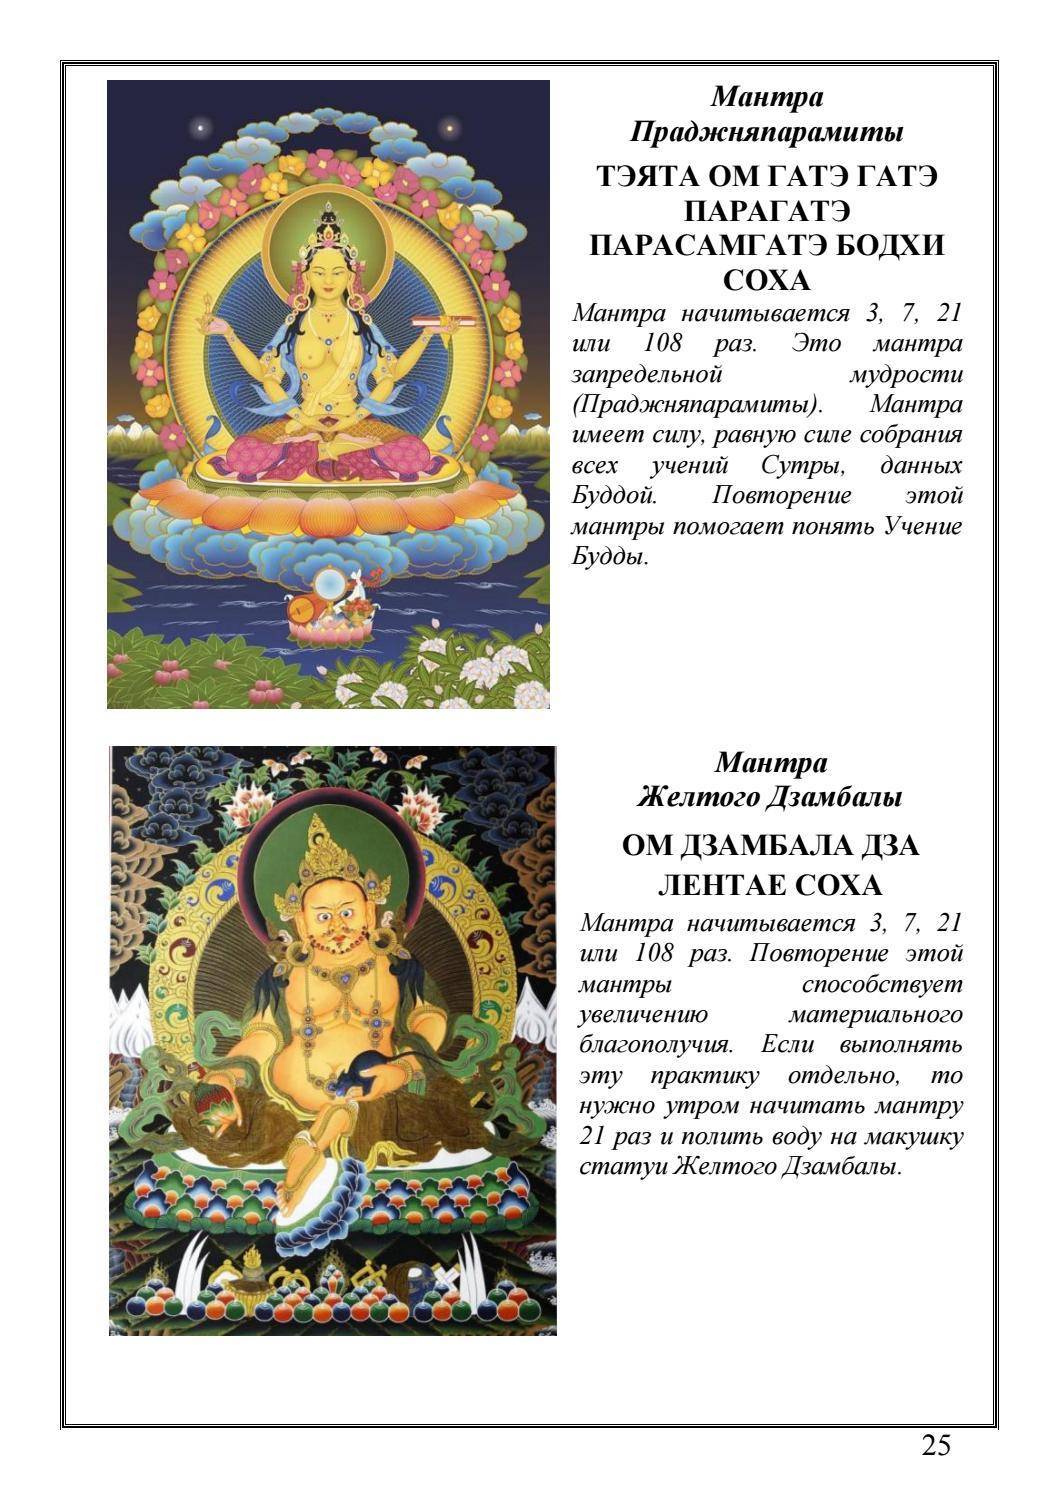 Мантра будды медицины: текст и перевод, слушать онлайн